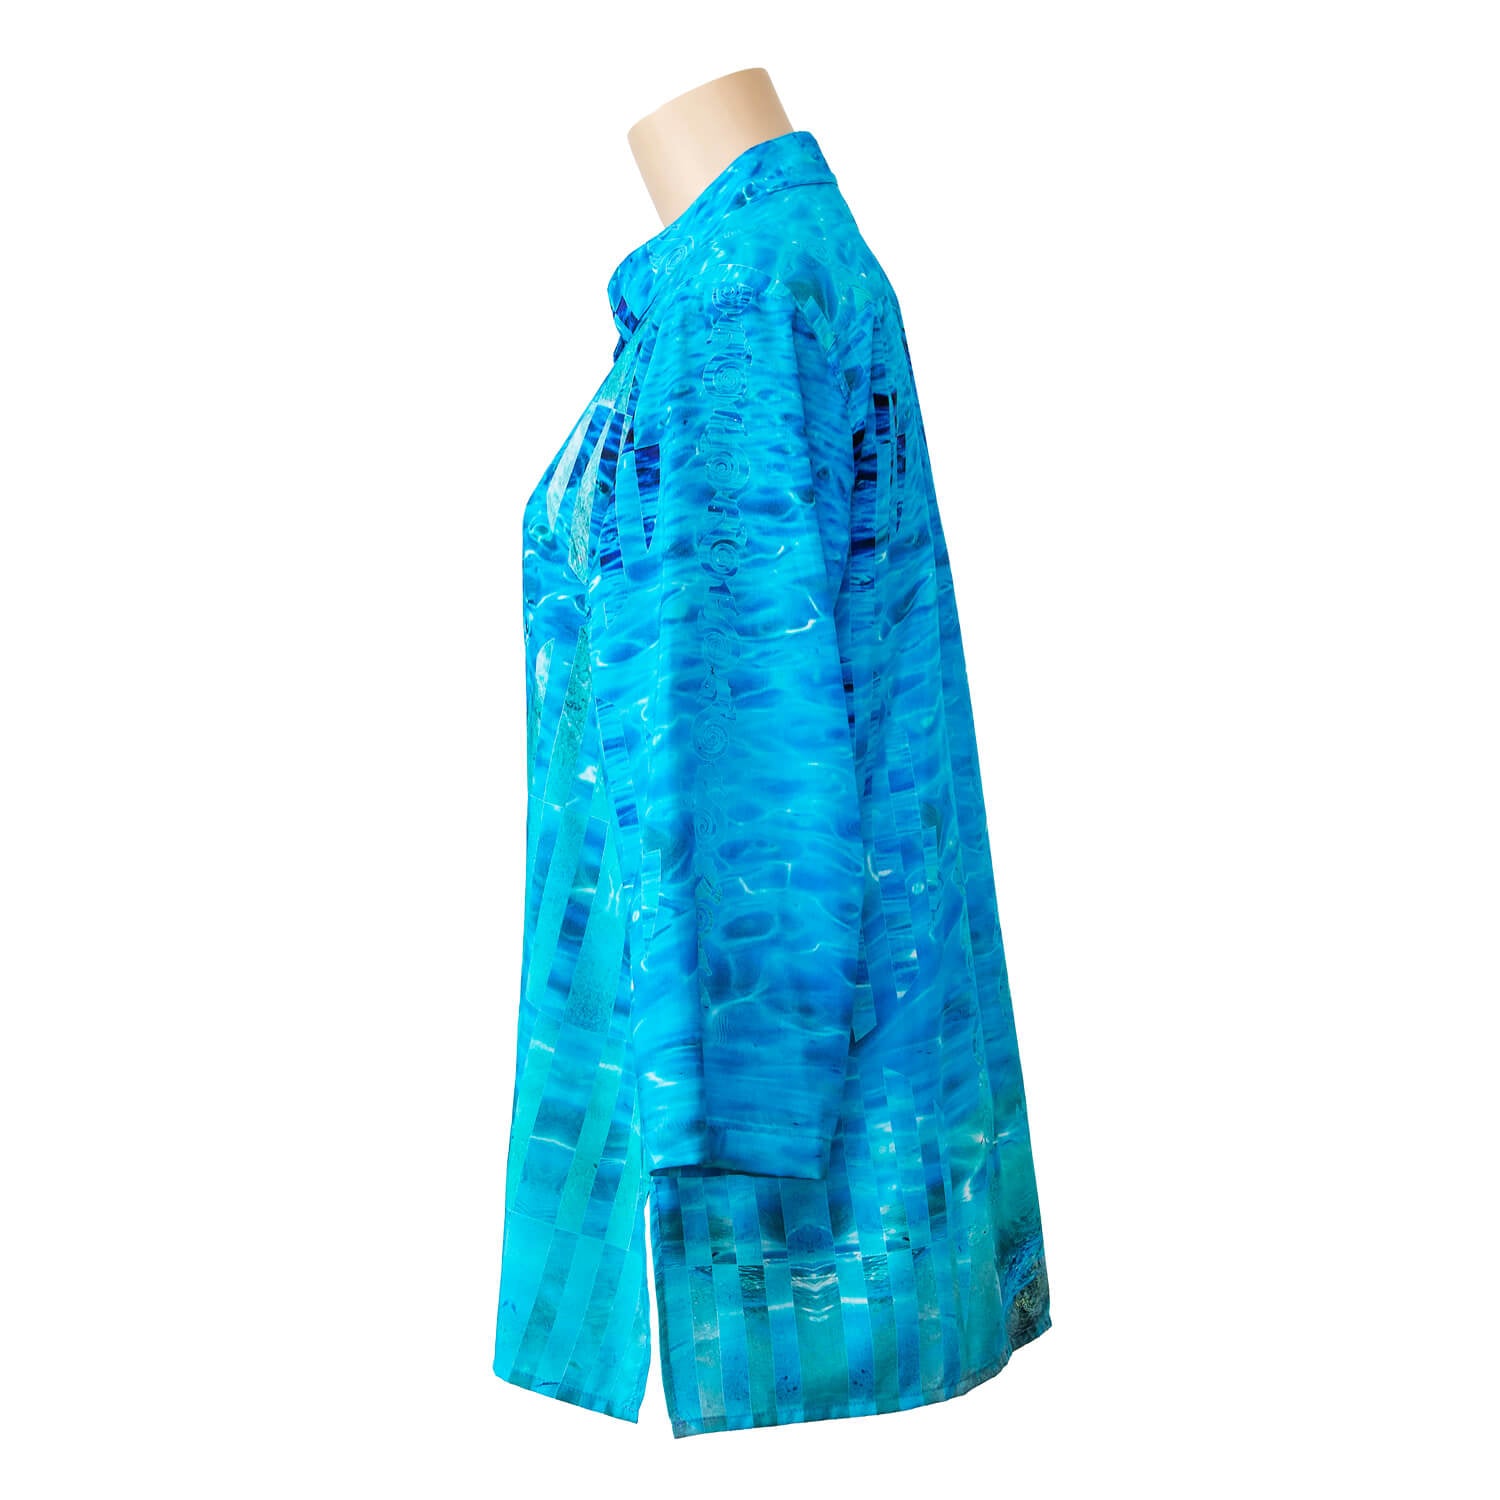 LHS view aqua blue silk cotton bali shirt by seahorse silks